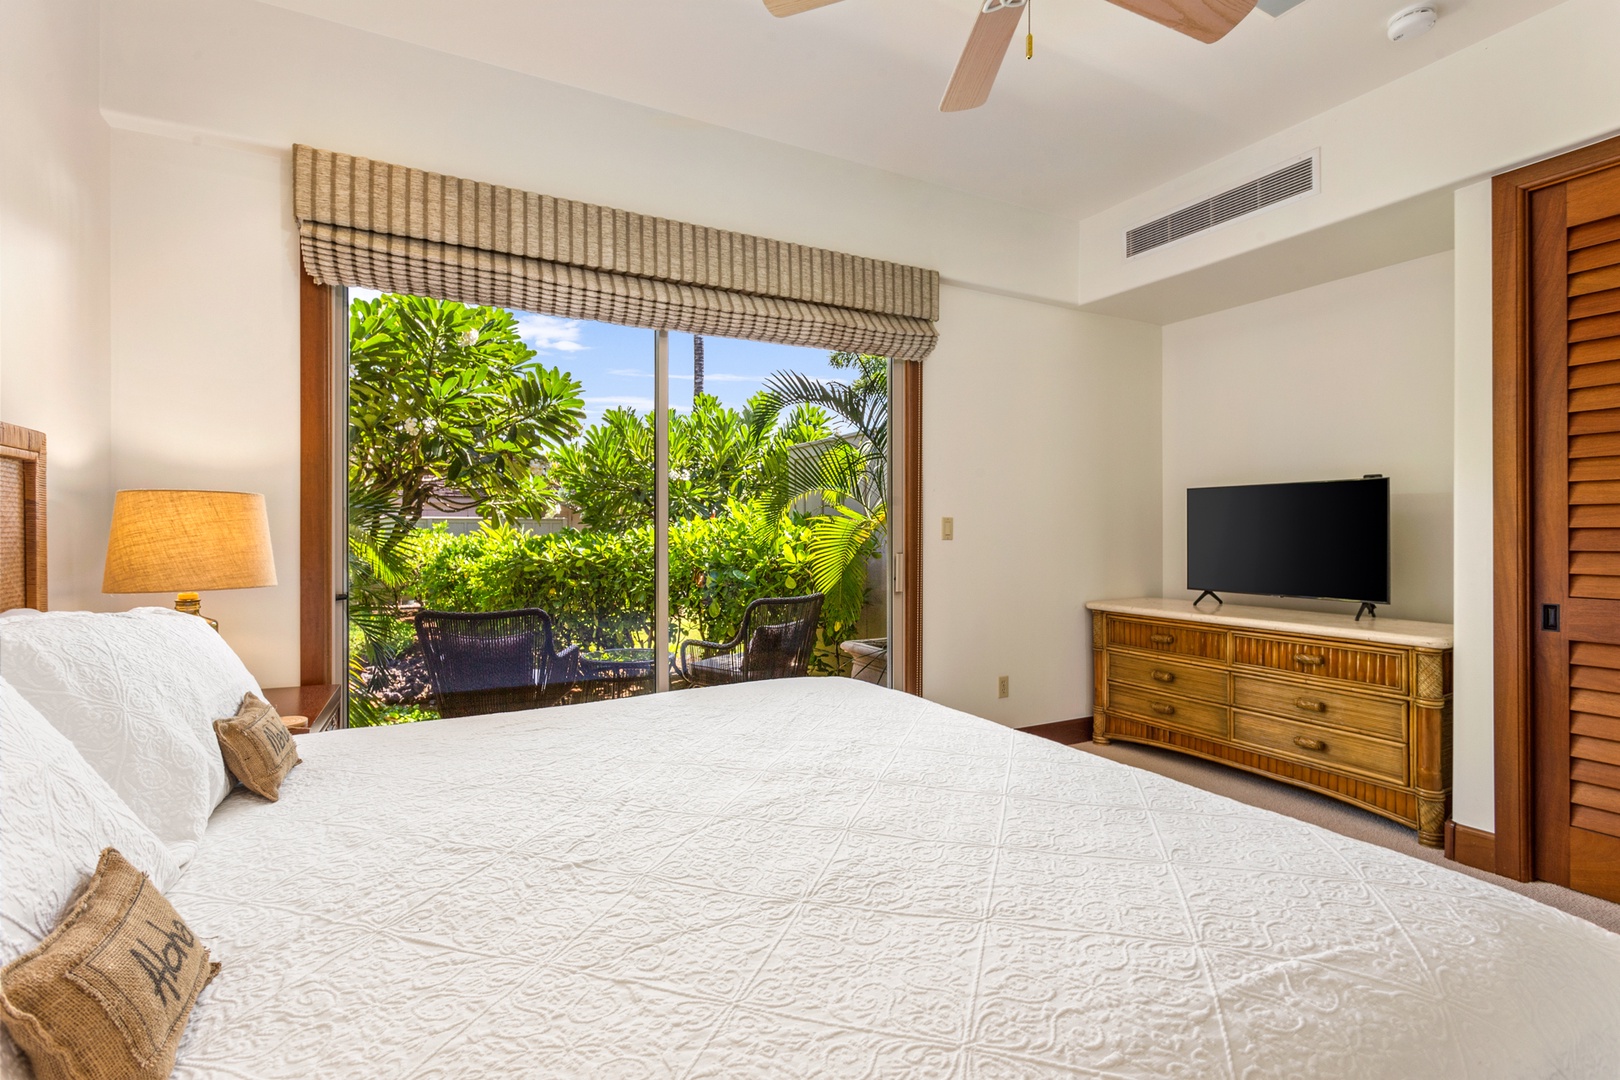 Kailua Kona Vacation Rentals, OFB 3BD Ka'Ulu Villa (129D) at Four Seasons Resort at Hualalai - Alternate view of second bedroom showcasing private patio and flatscreen television.